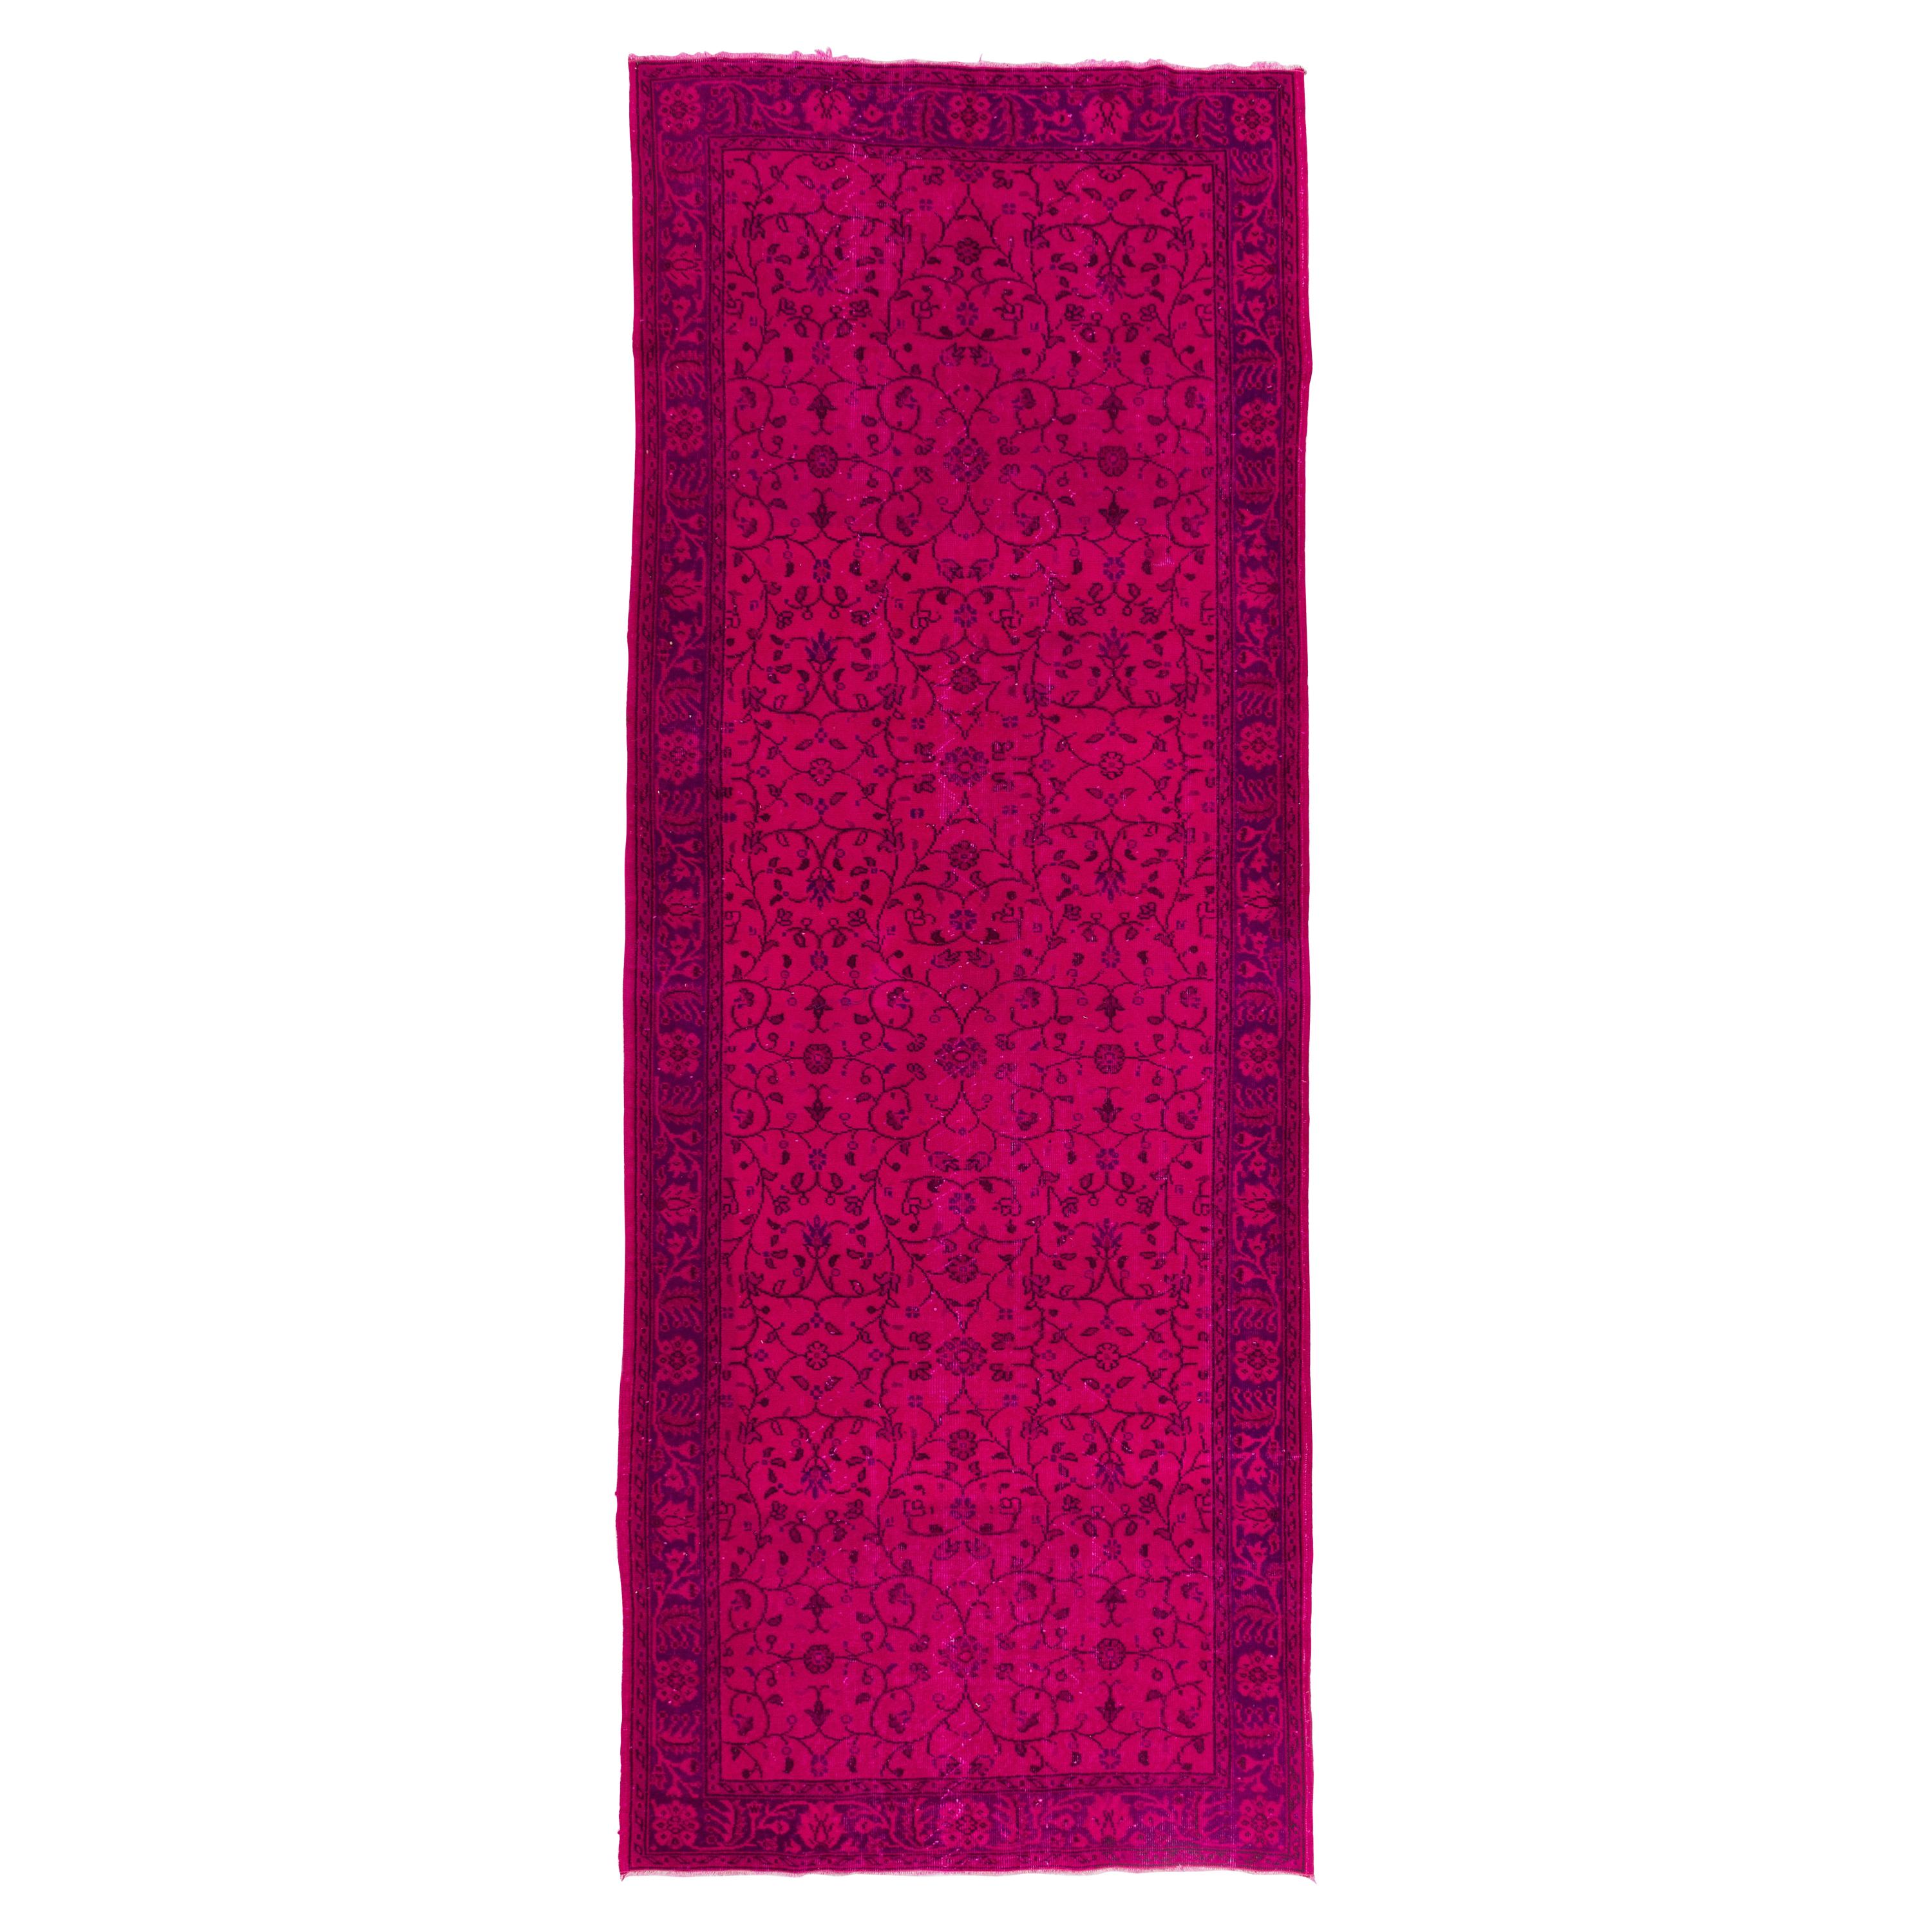 5x13 Ft Handmade Vintage Floral Pattern Runner Rug in Hot Pink for Hallway Decor For Sale